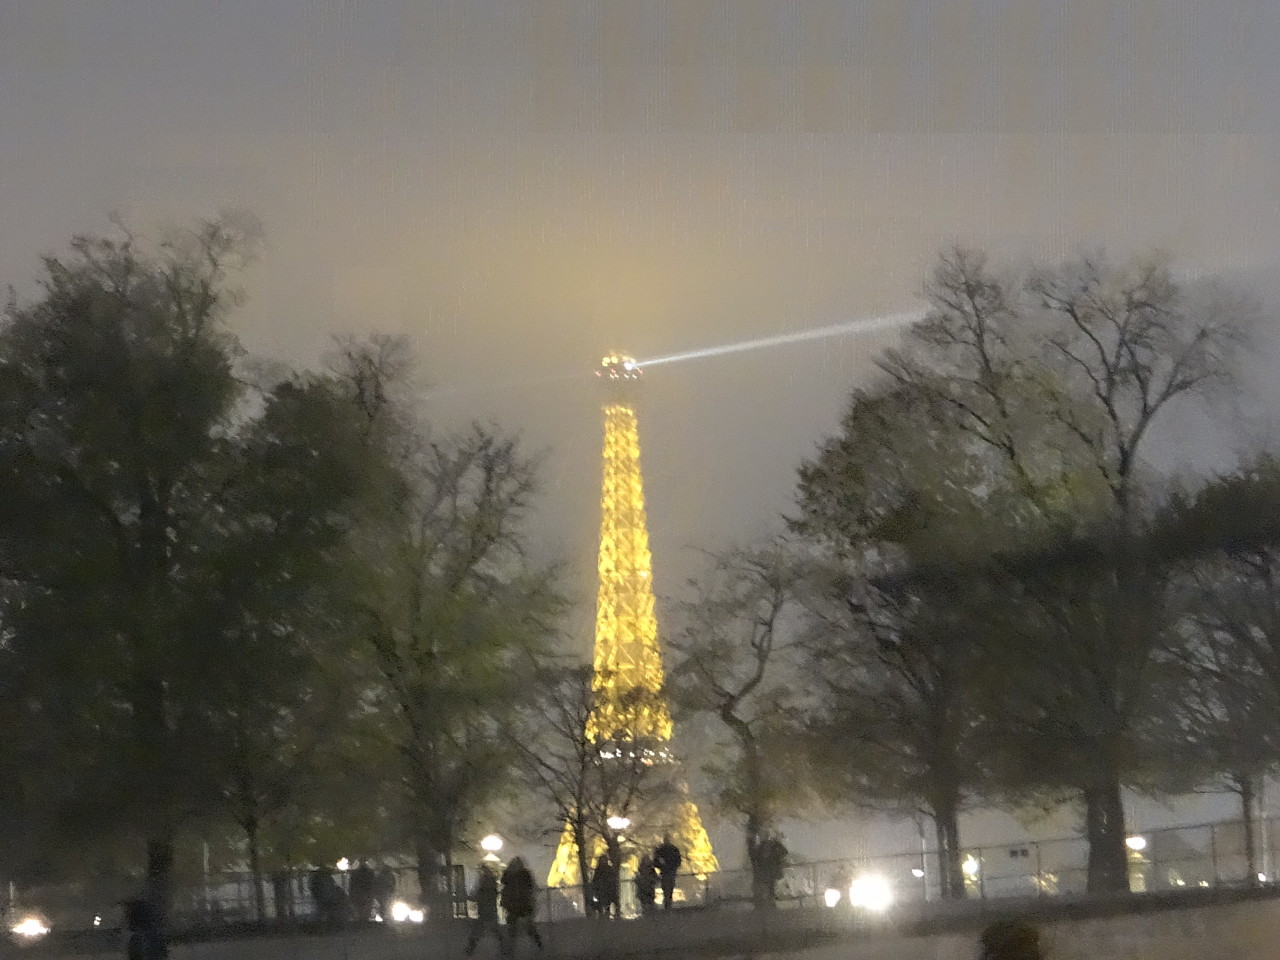 Eiffel Tower Illuminated at night